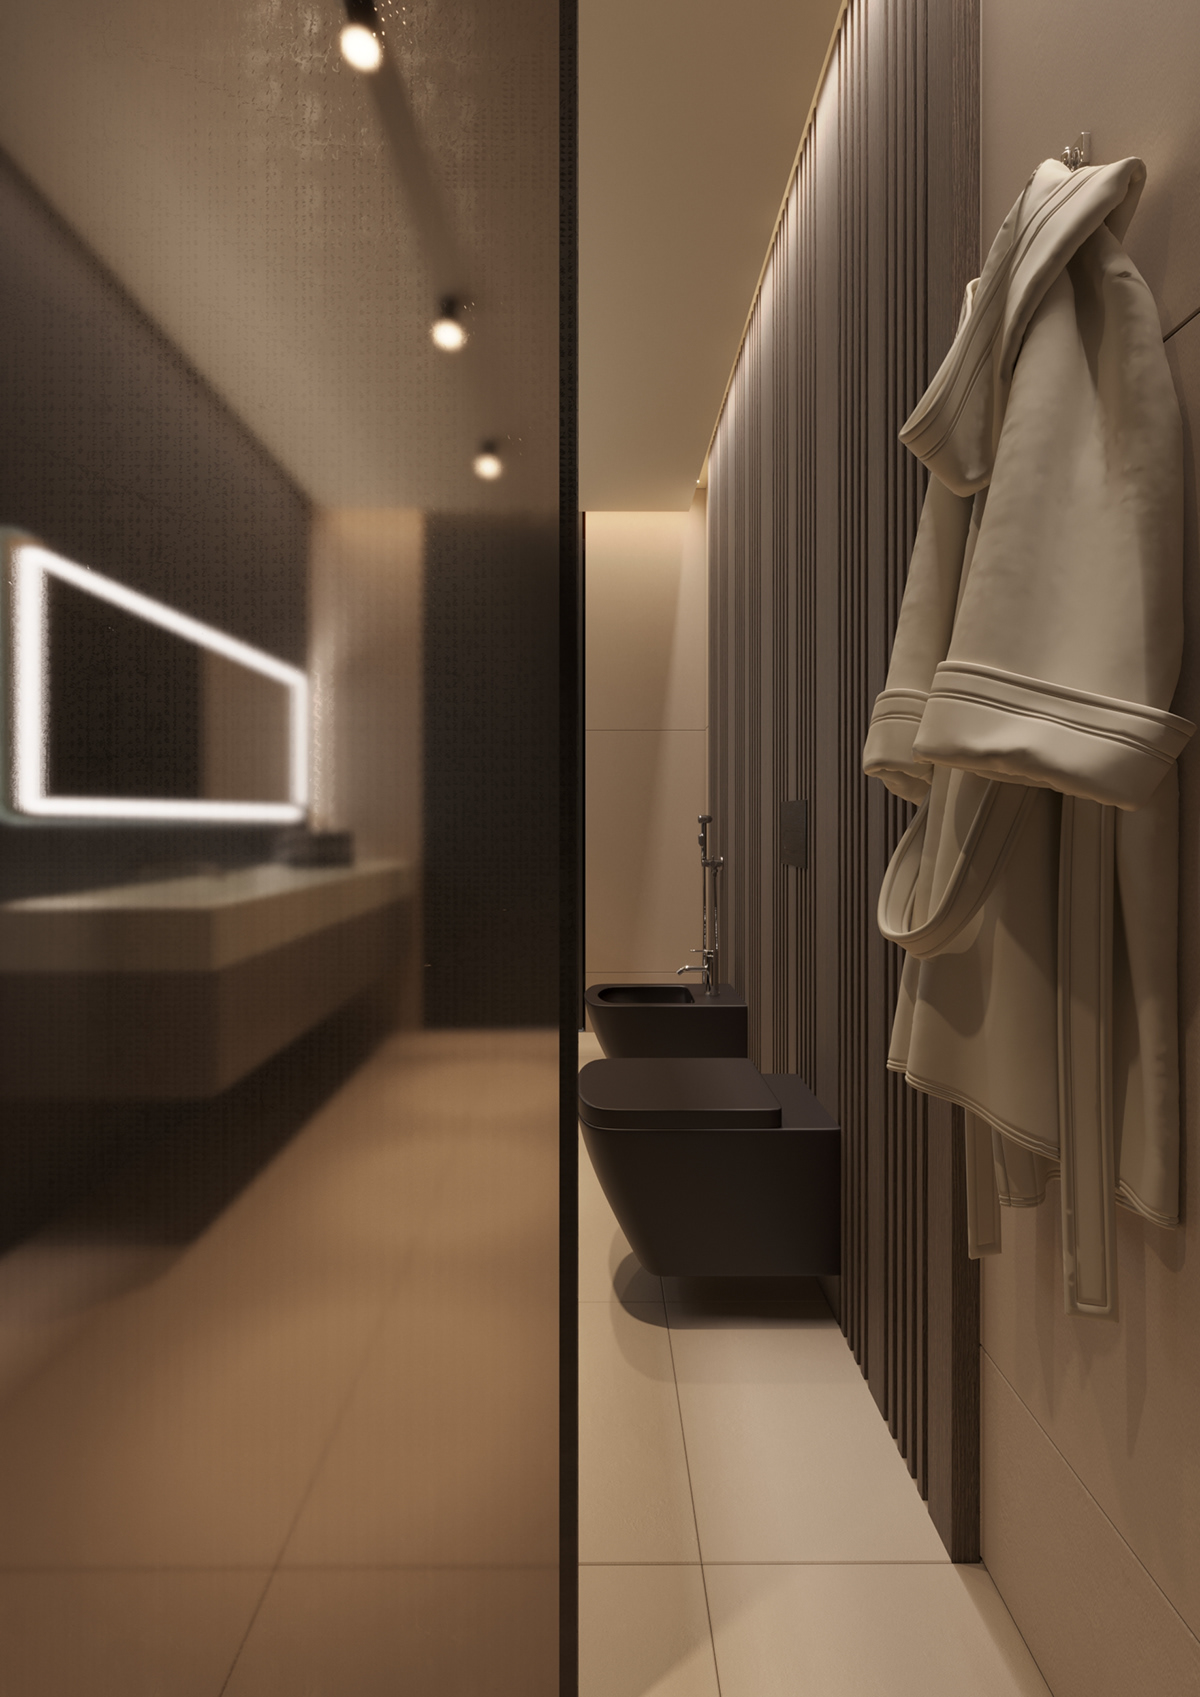 дизайн ванной дизайн гостиной дизайн интерьера Дизайн квартиры дизайн кухни  Дизайн проект  дизайн спальни интерьер современный интерьер